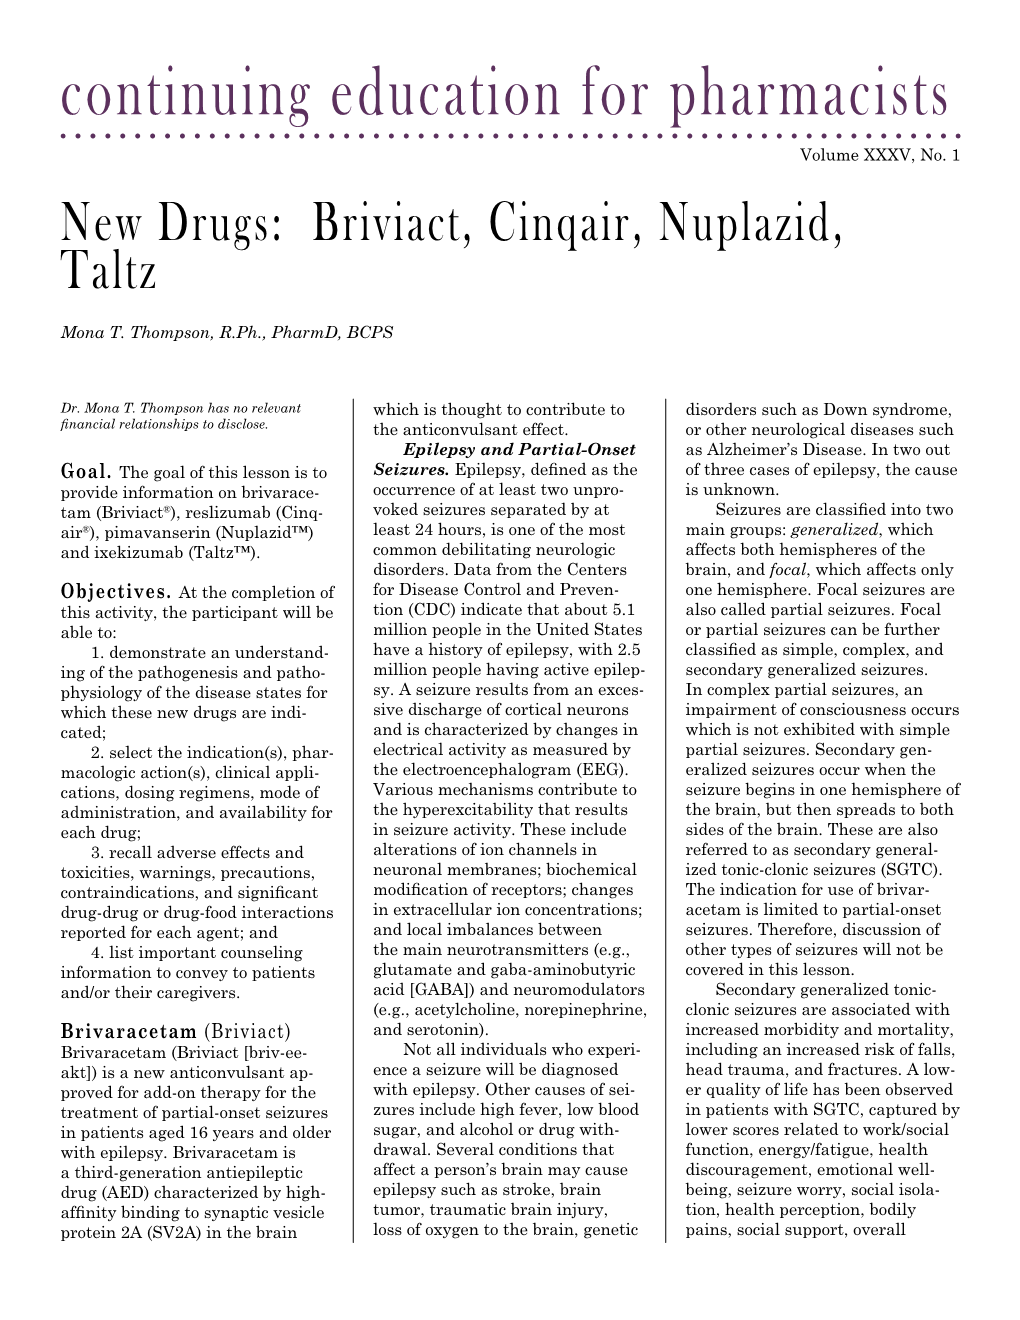 New Drugs: Briviact, Cinqair, Nuplazid, Taltz